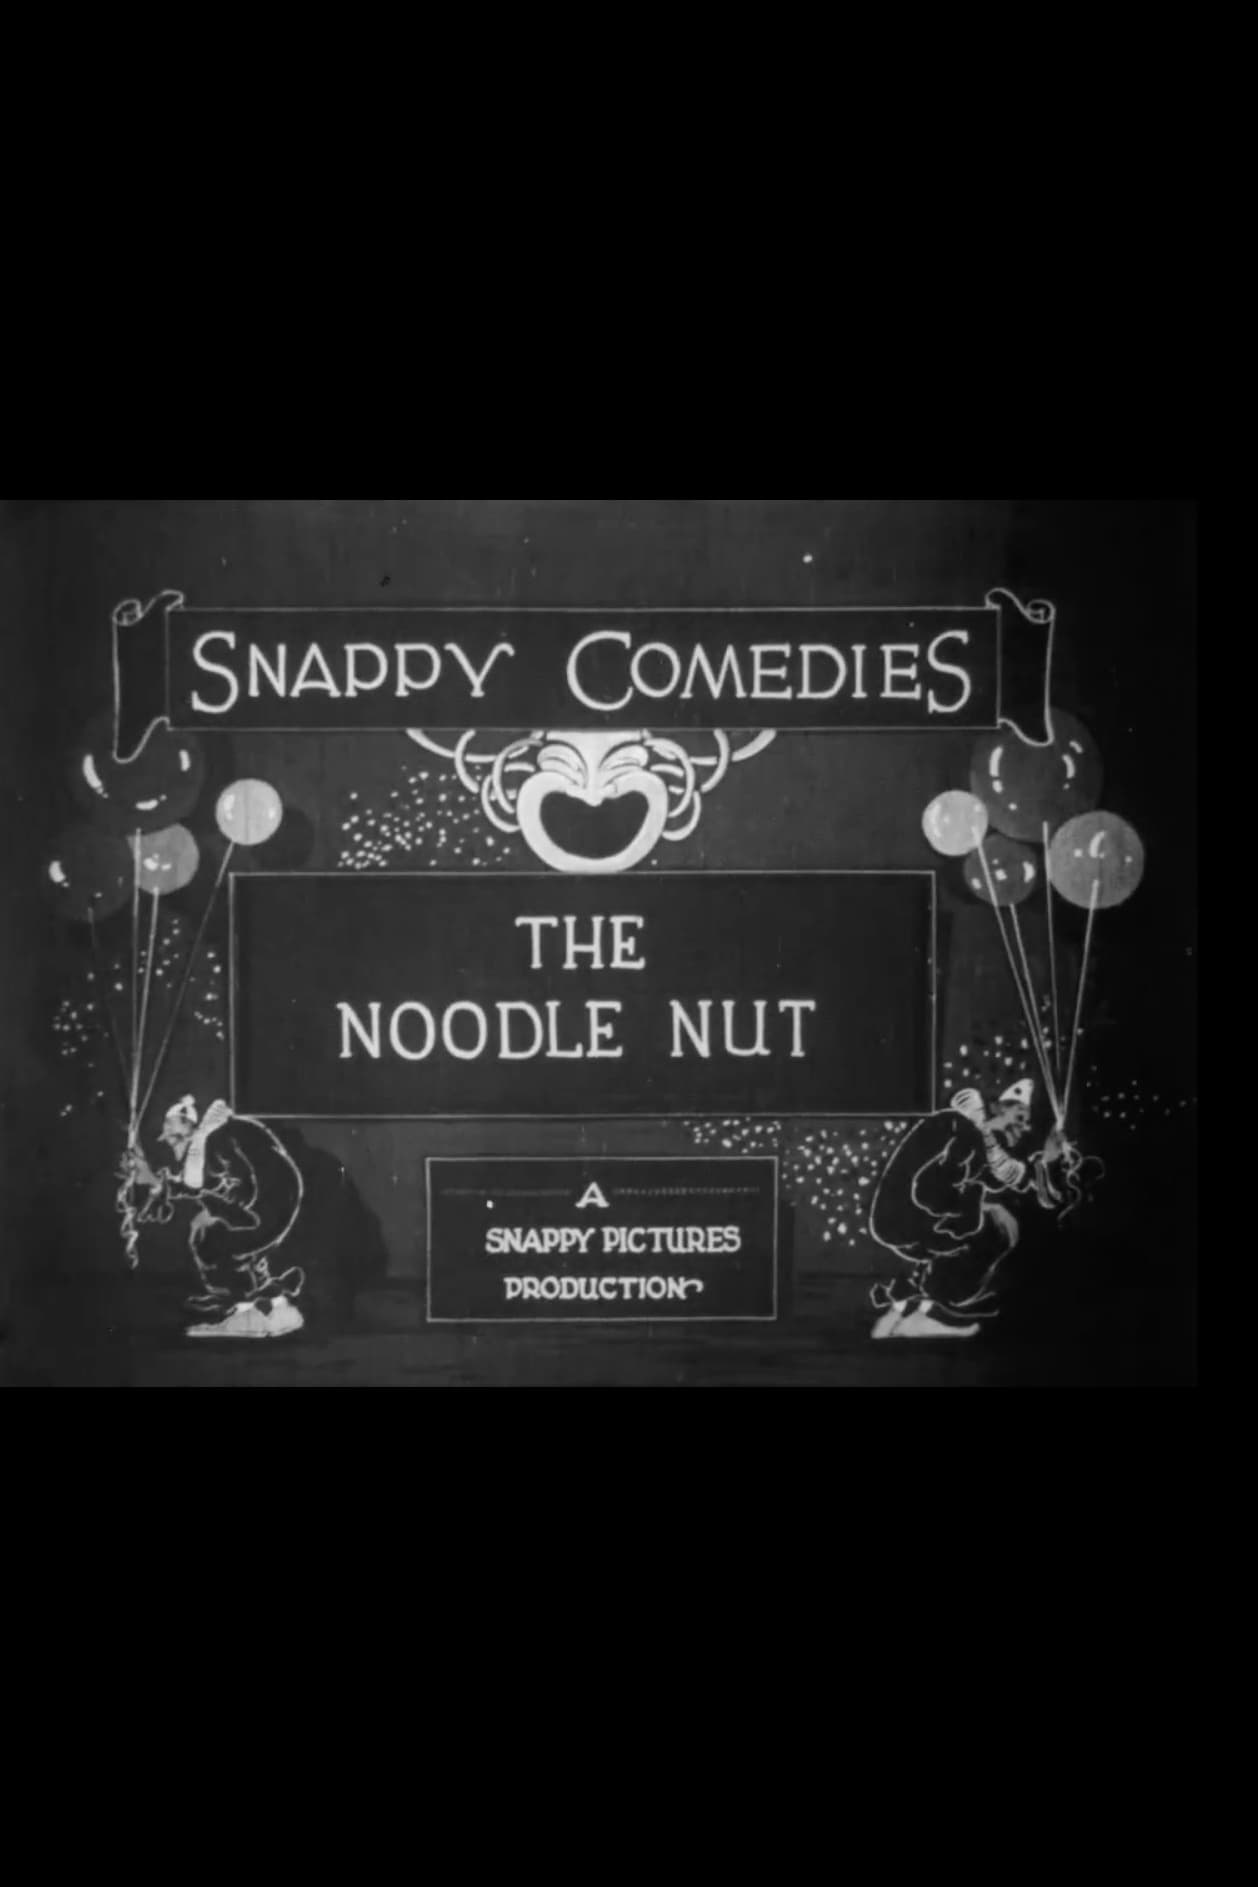 The Noodle Nut